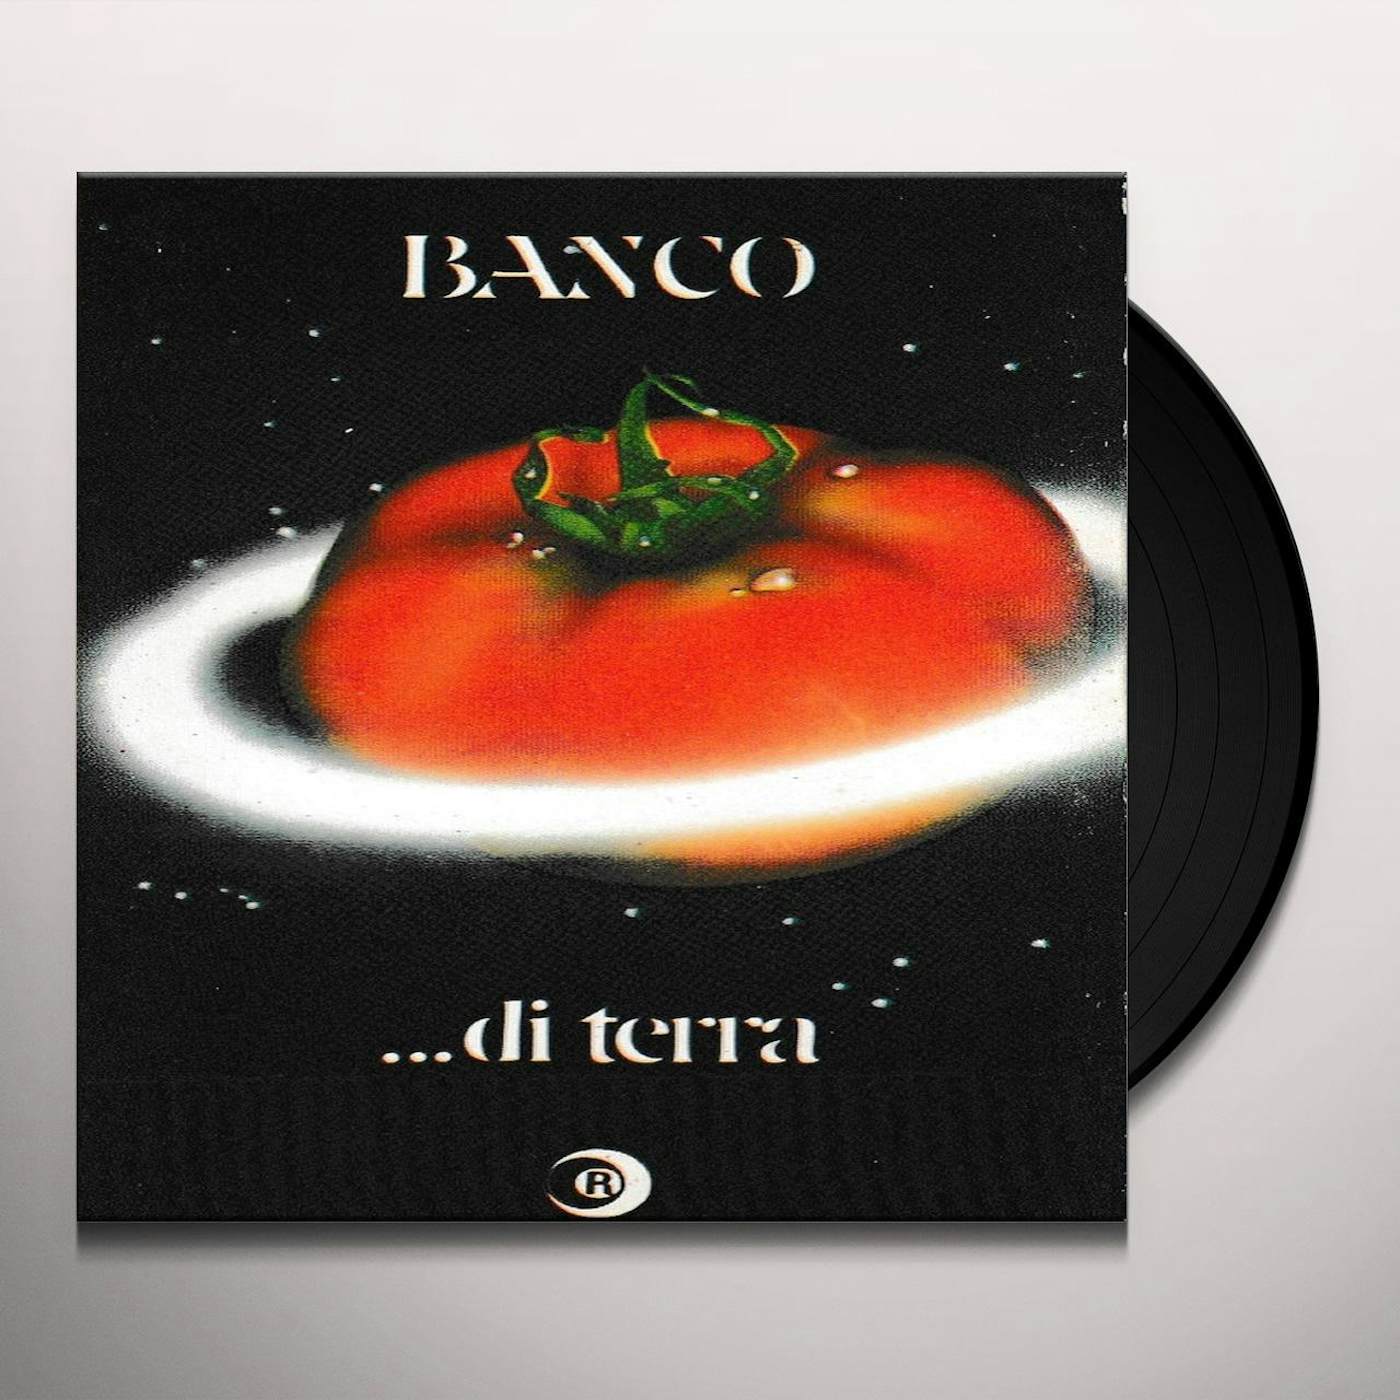 Banco Del Mutuo Soccorso DI TERRA Vinyl Record